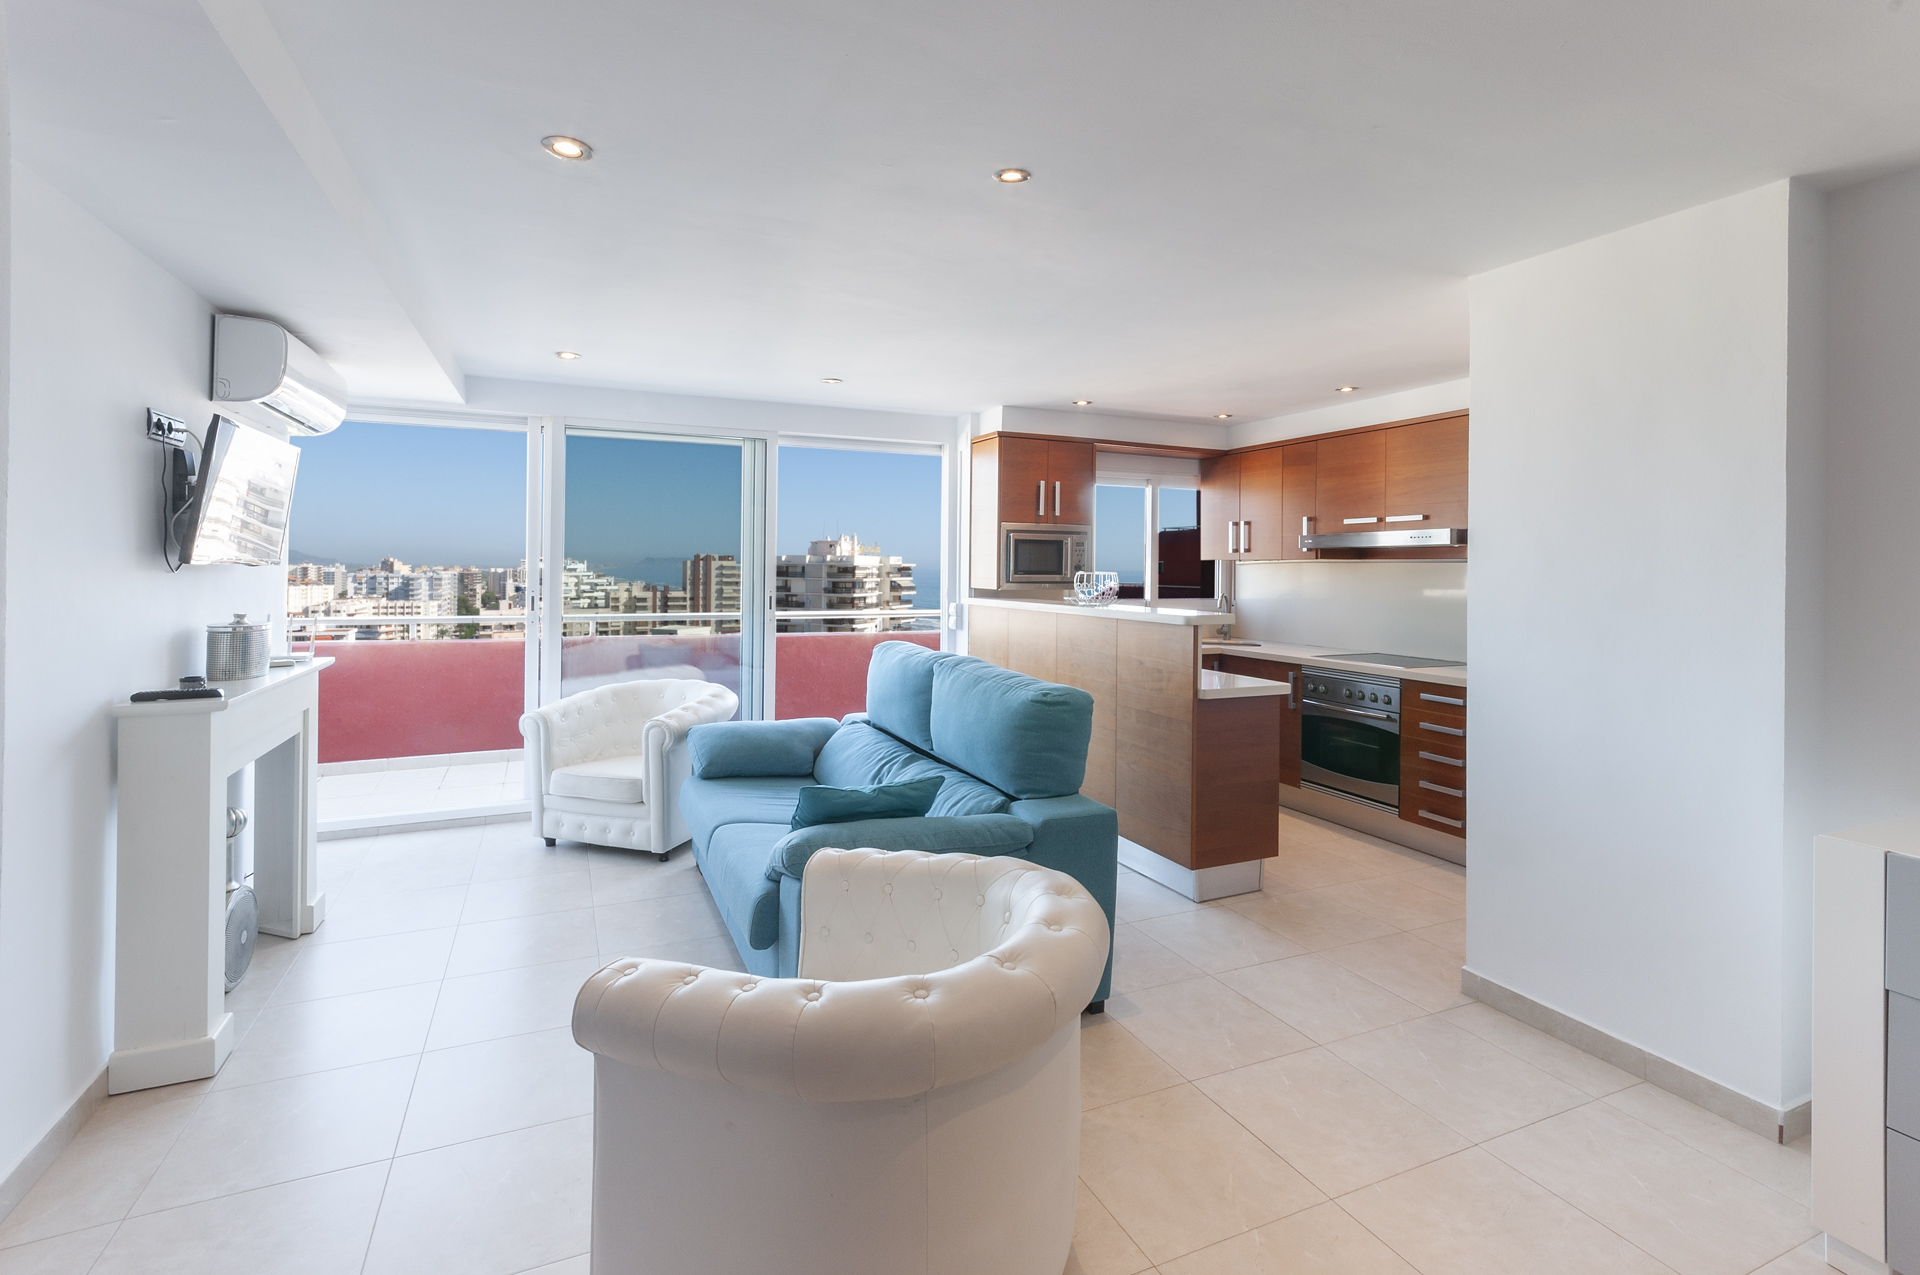 Apartment for rent in Playa de Gandia – Ref. 001413